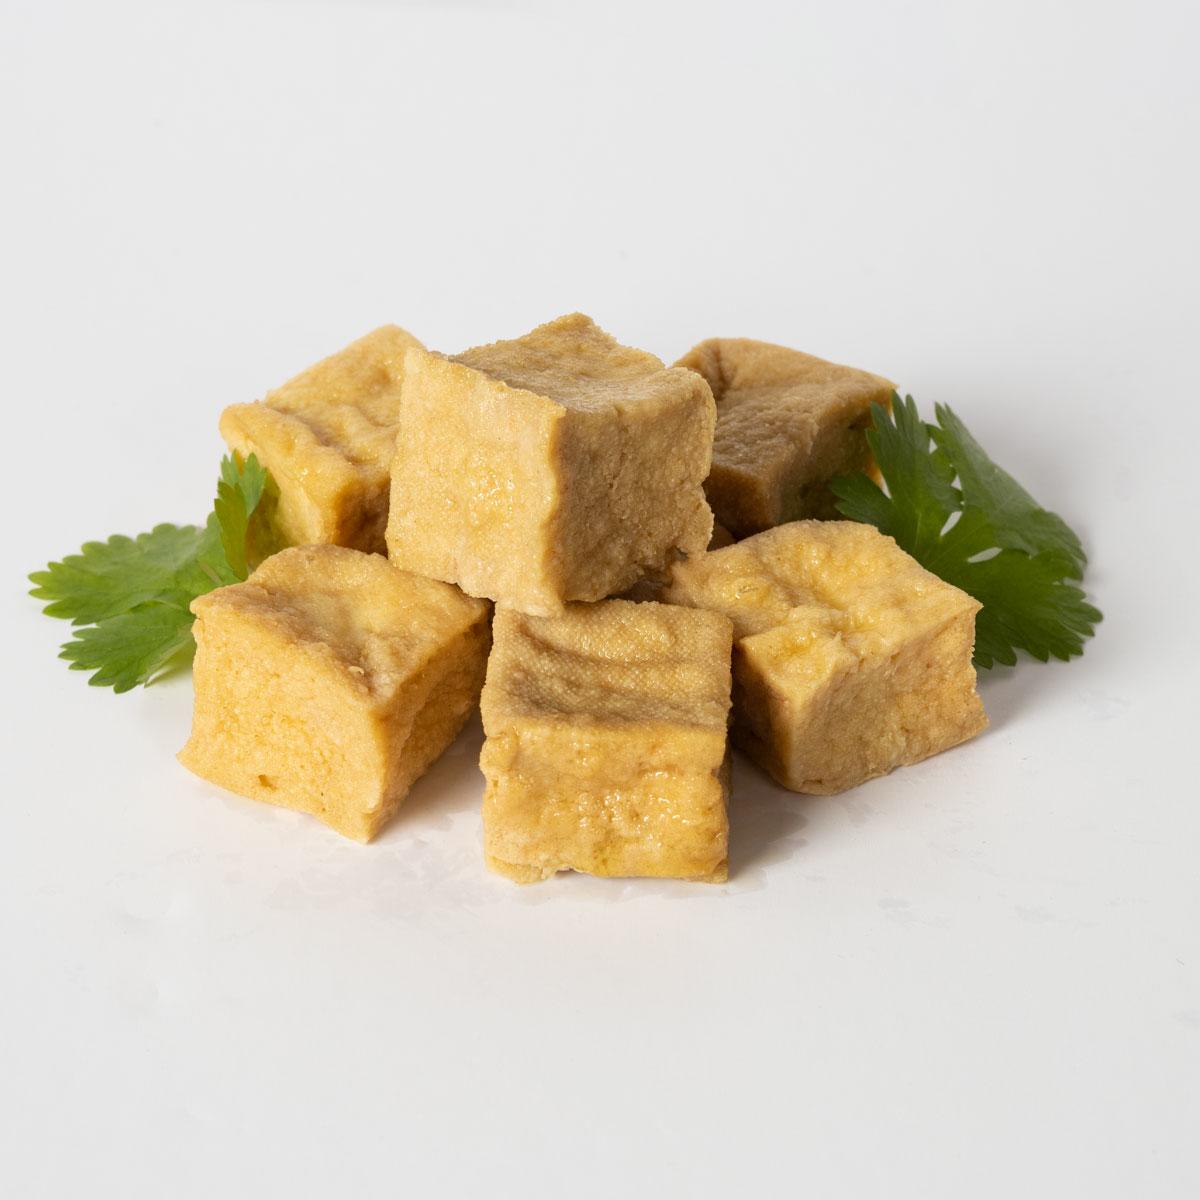 Yipin's Friterad tofu storpack (2 kg)'